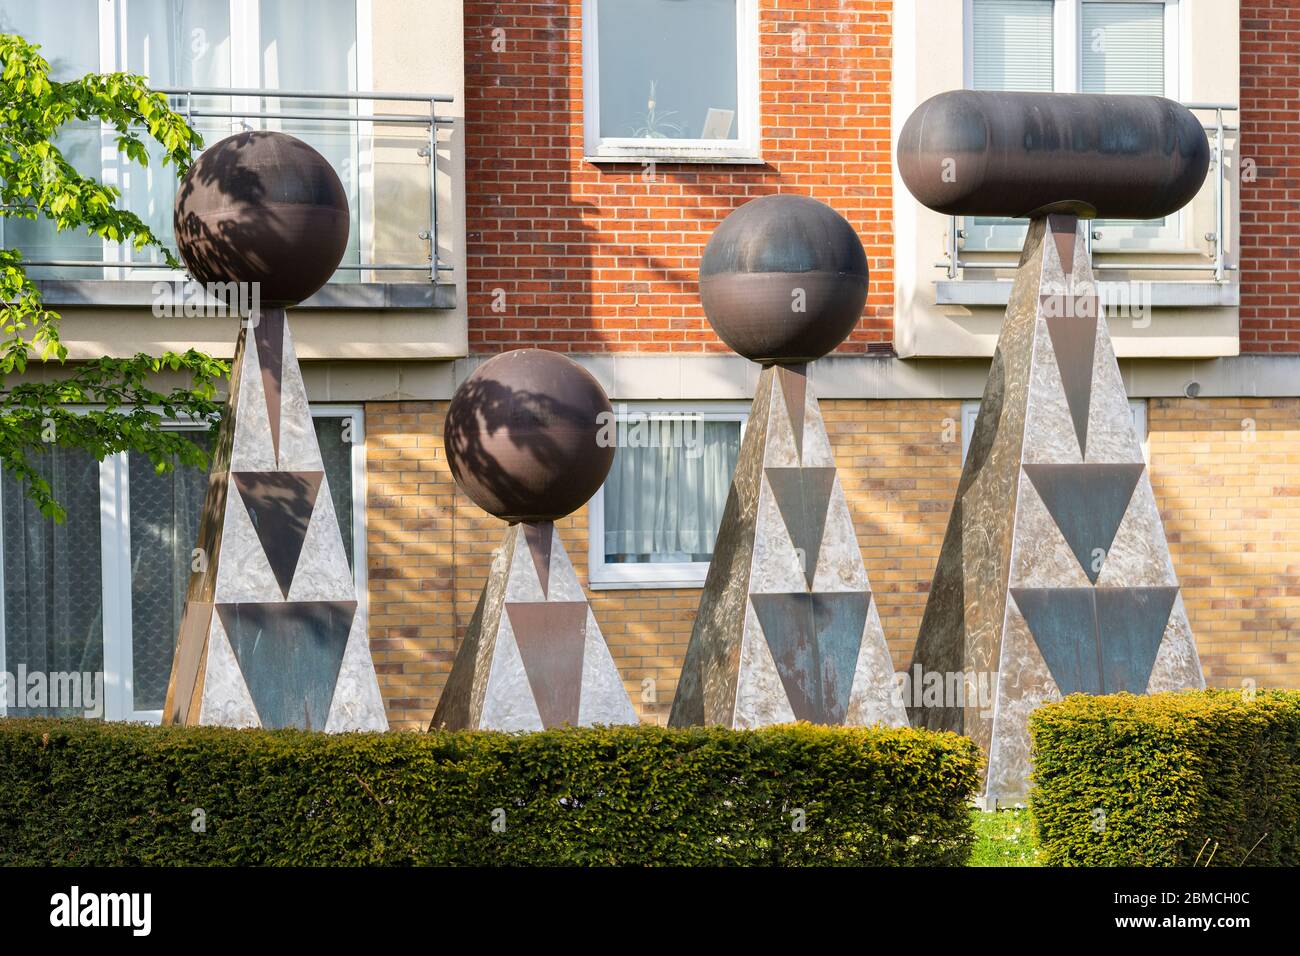 Las obras de arte públicas de Victory Hill en Winterthur Way están hechas de acero inoxidable y cobre hilado y representan la palabra victoria en el código morse. Basingstoke, Reino Unido Foto de stock